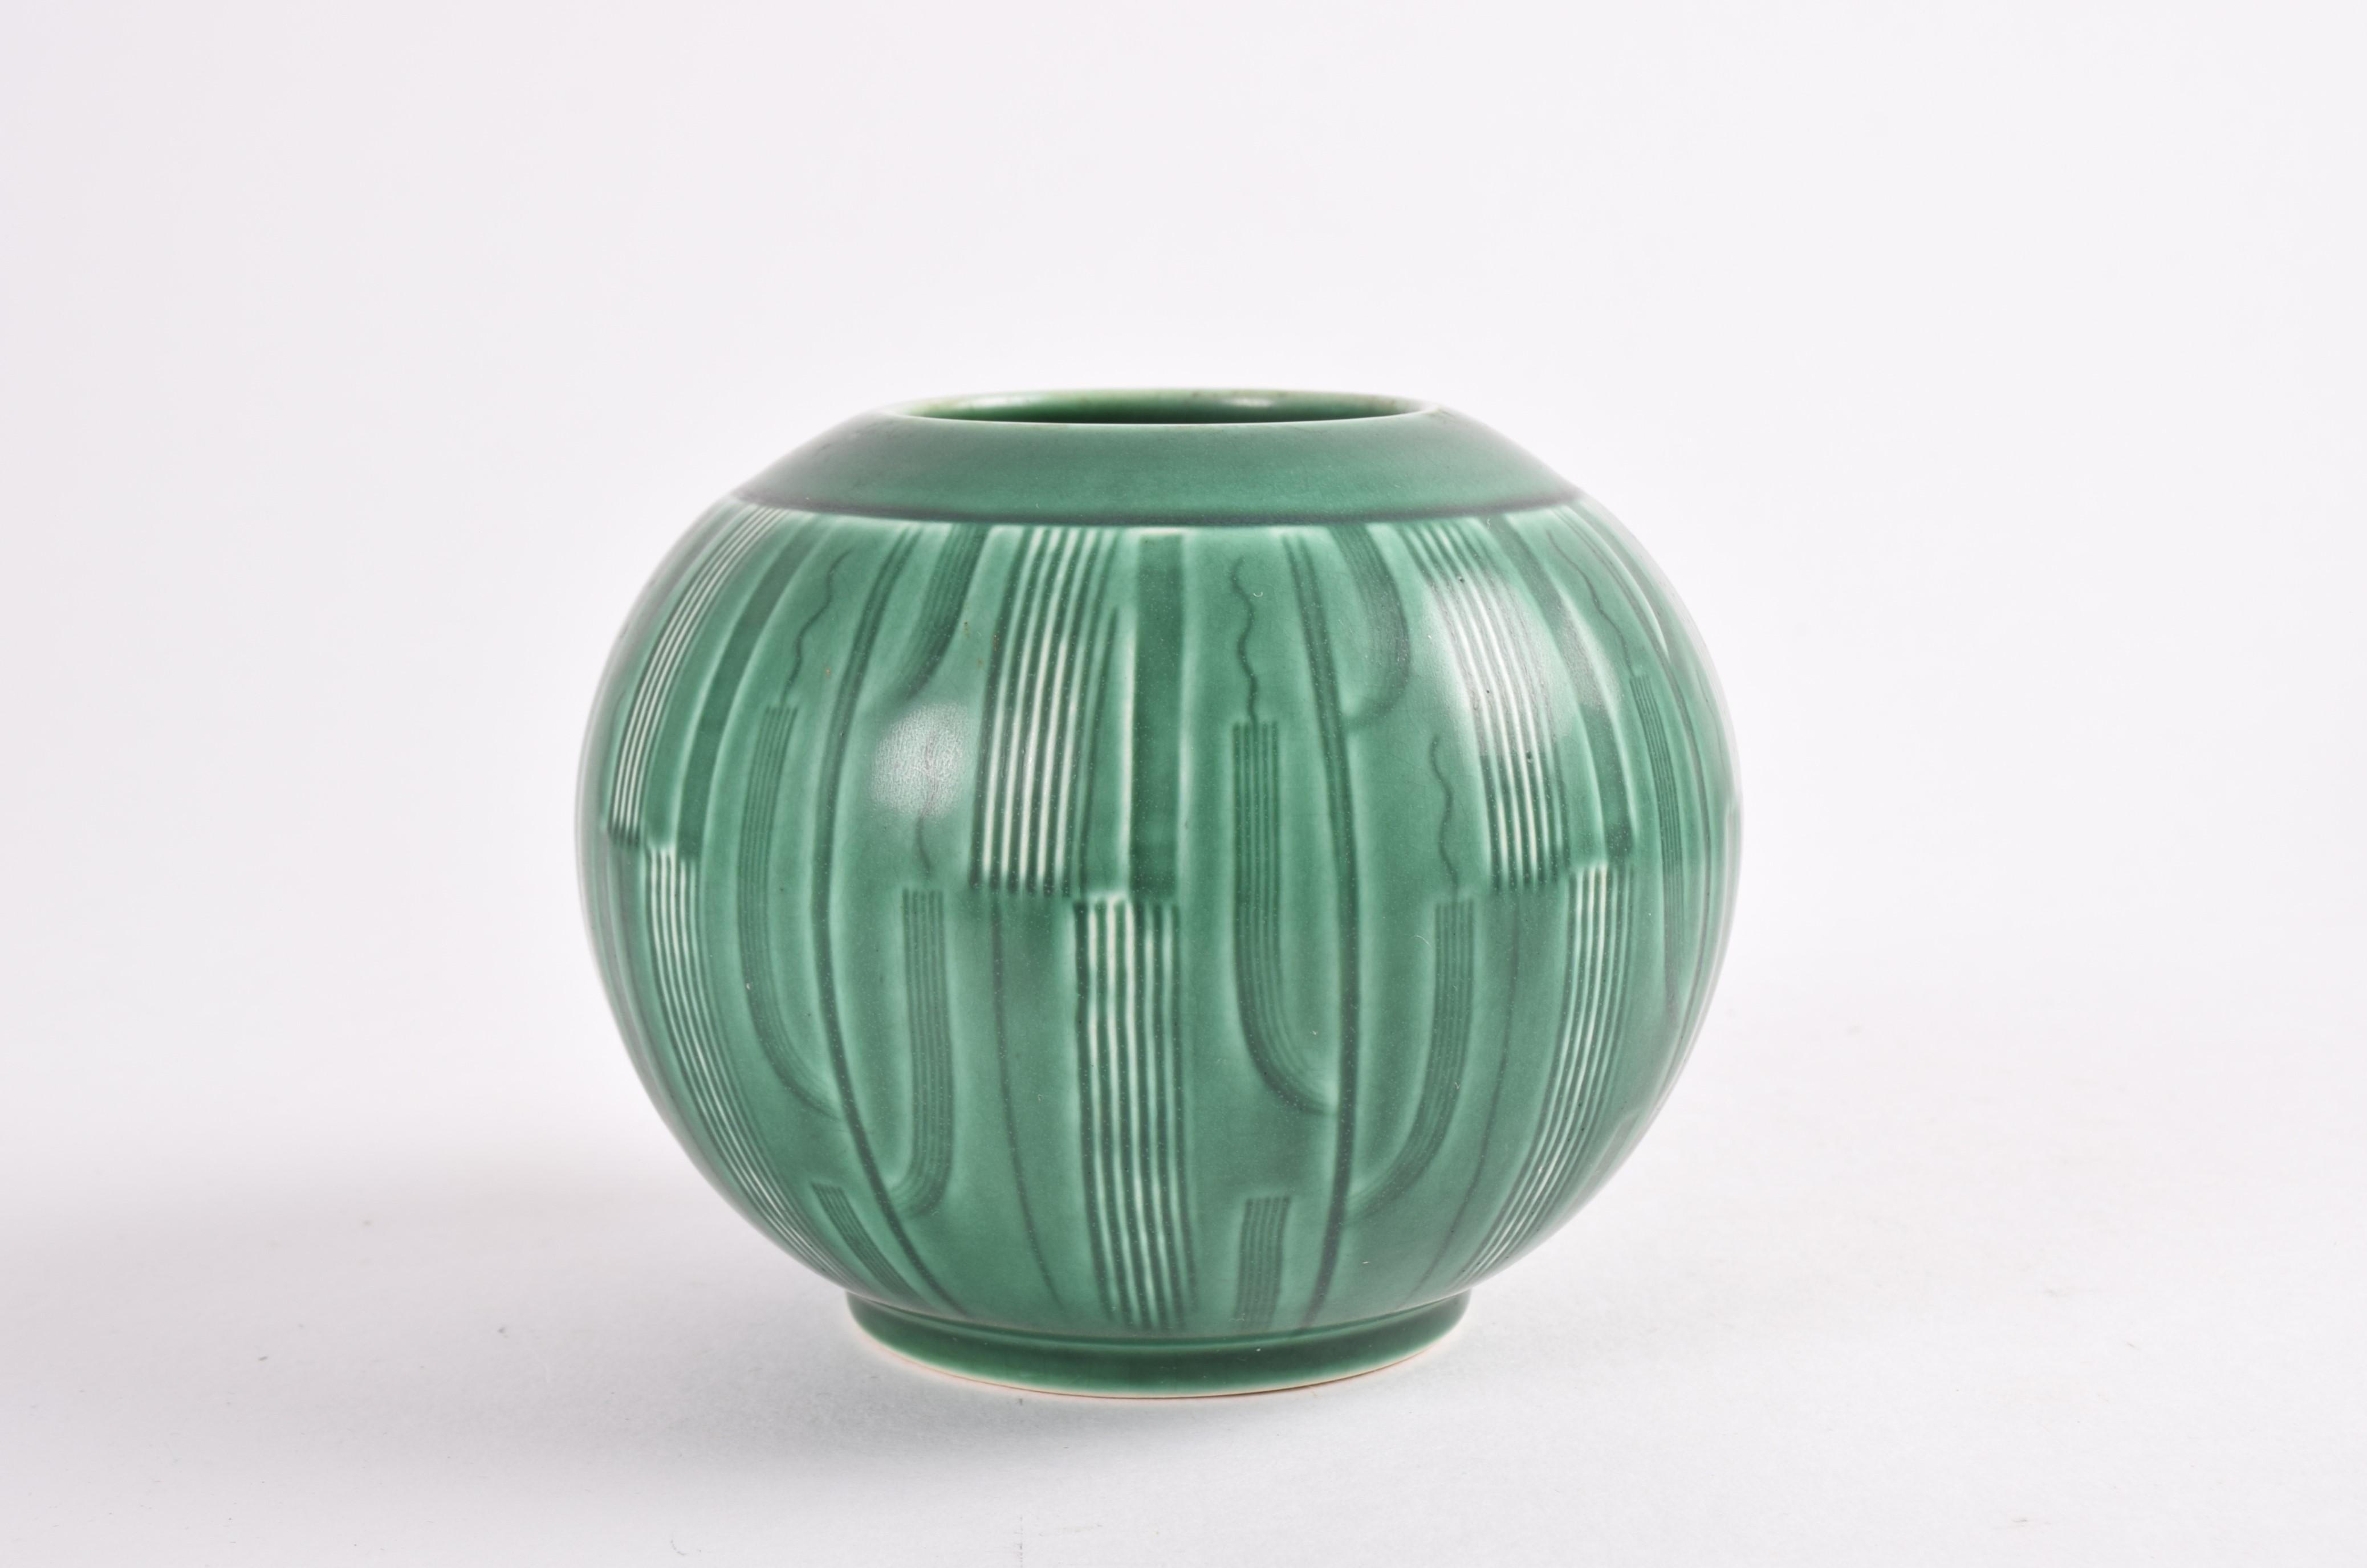 Dänische Art Deco Vase von Nils Thorsson für Aluminia (späterer Markenname Royal Copenhagen). Die Vase stammt aus der Serie 